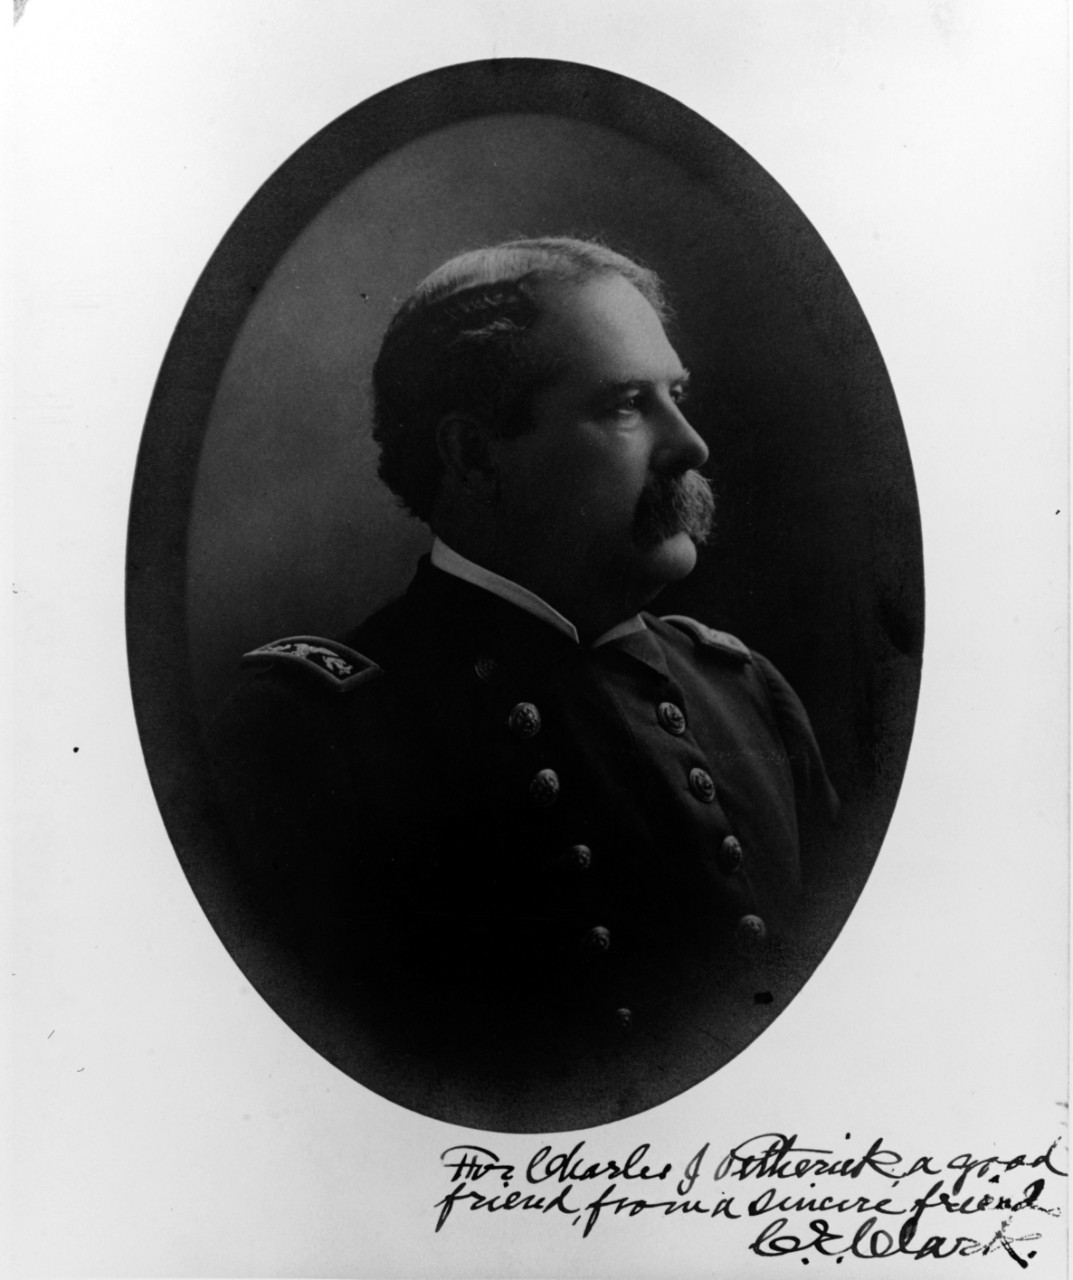 Charles E. Clark, Captain, USN